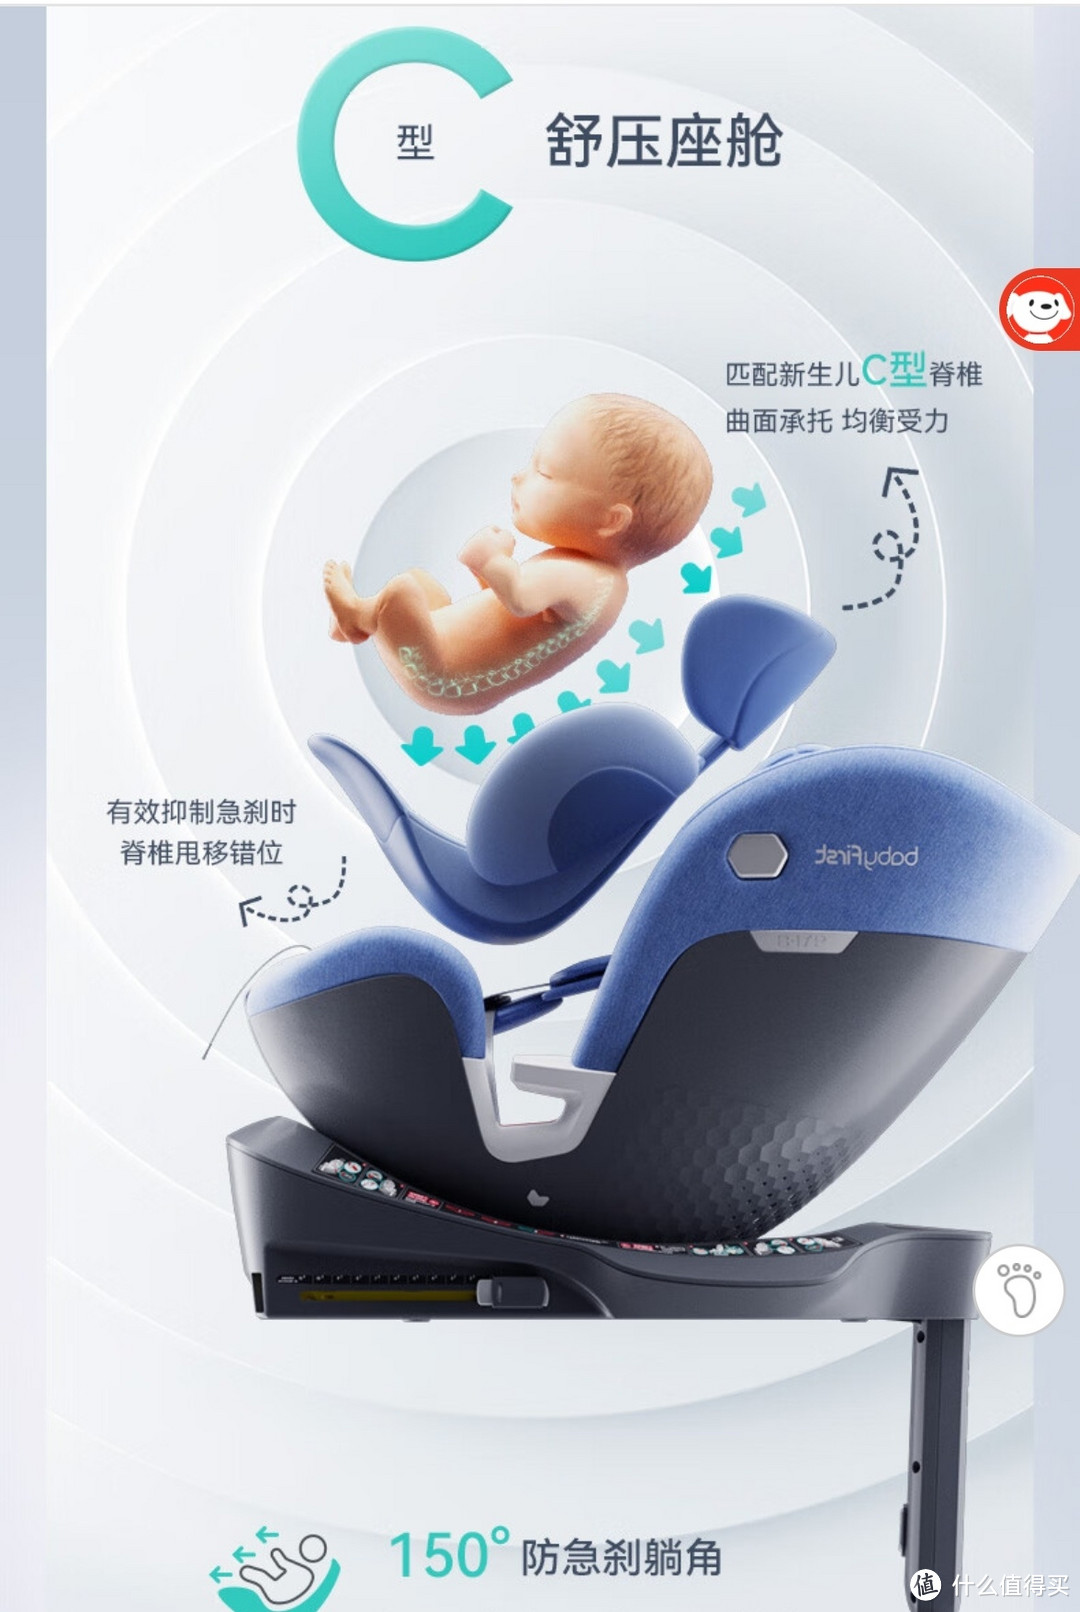 刚出生的宝宝能坐汽车安全座椅吗？